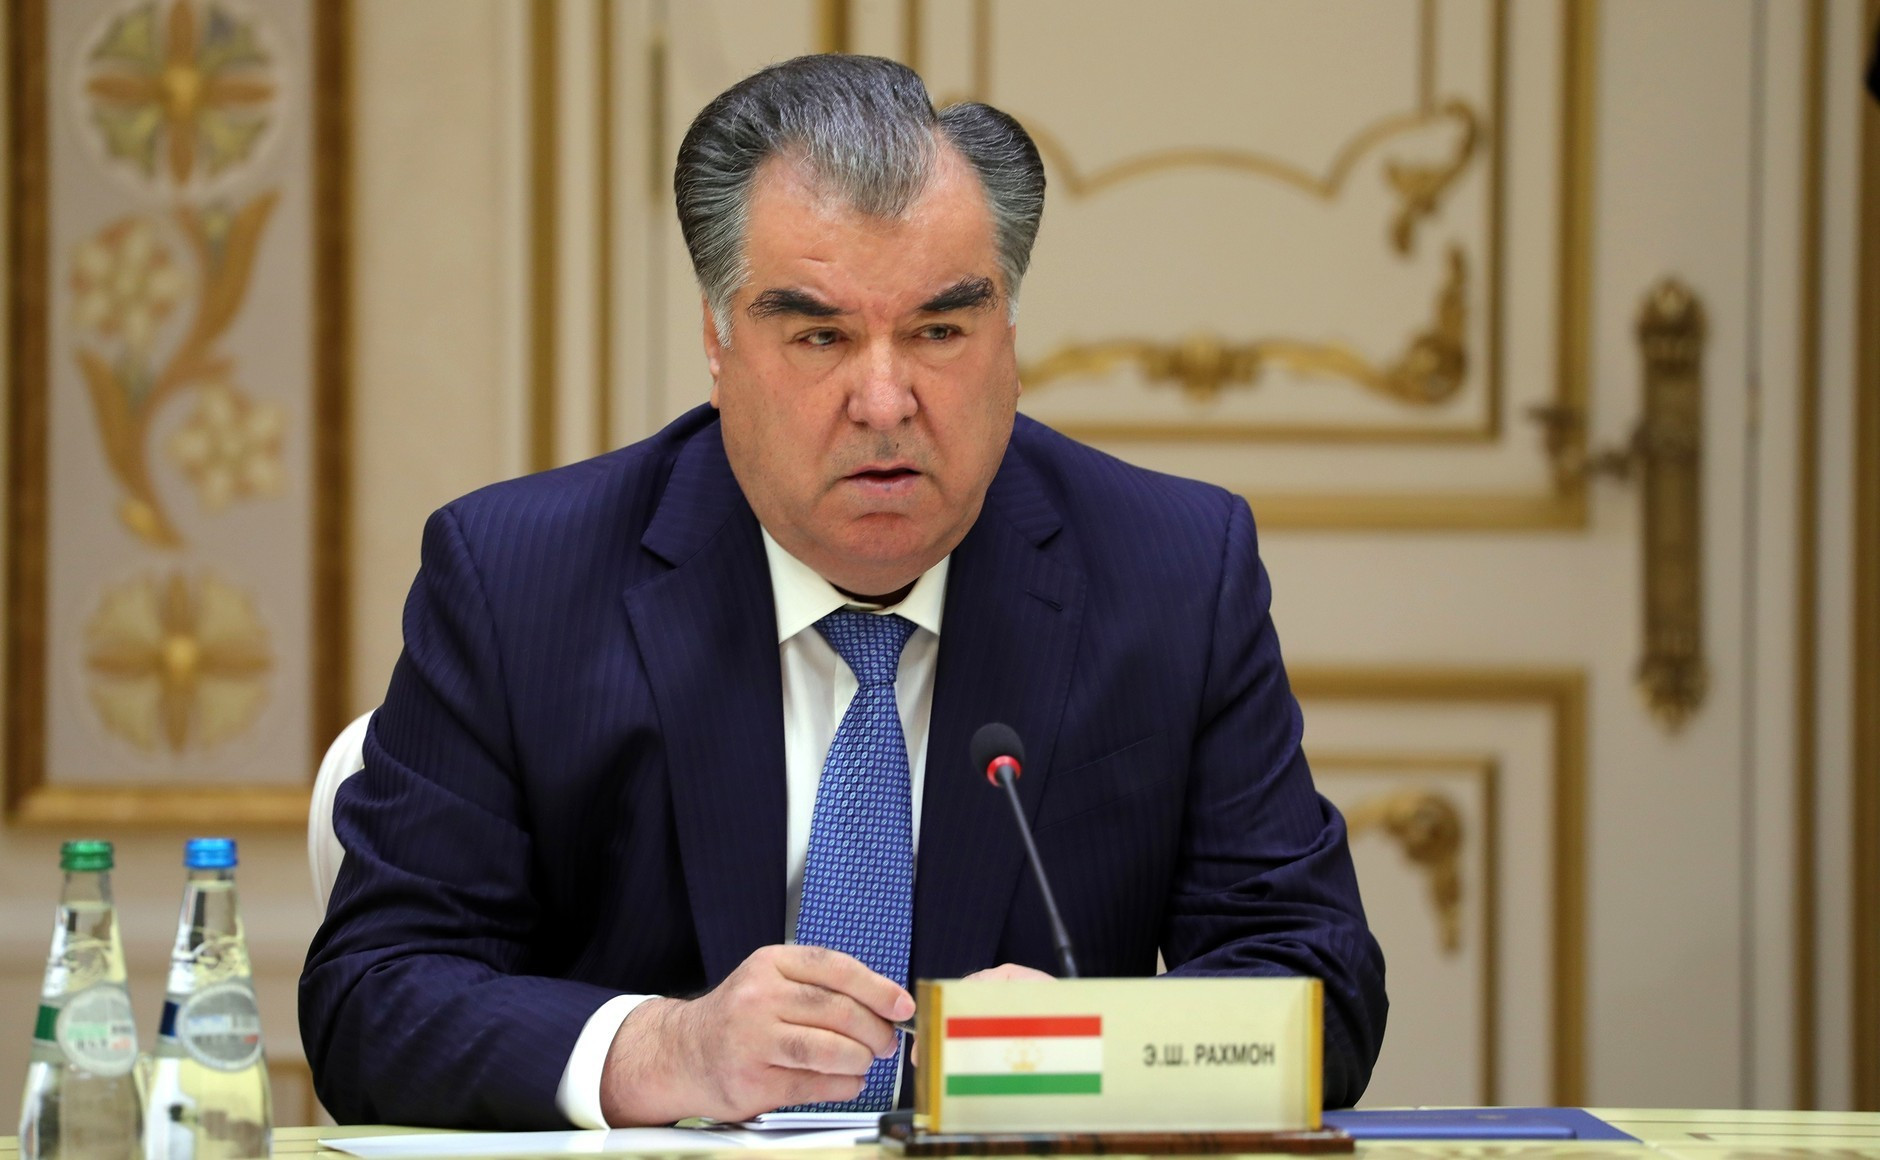 Президент Таджикистана посетит Азербайджан